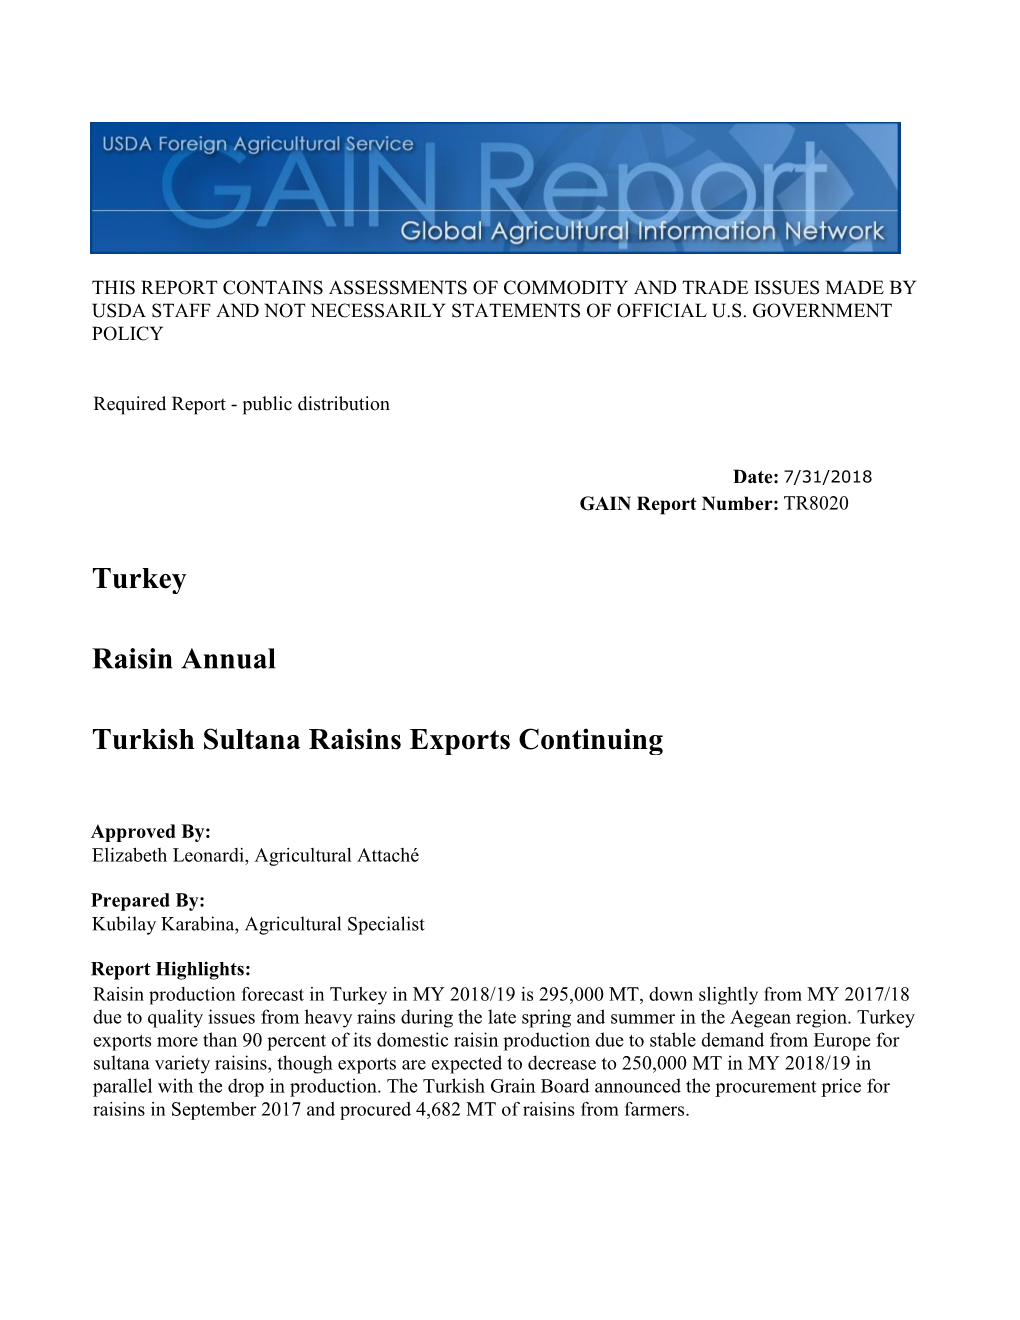 Turkish Sultana Raisins Exports Continuing Raisin Annual Turkey